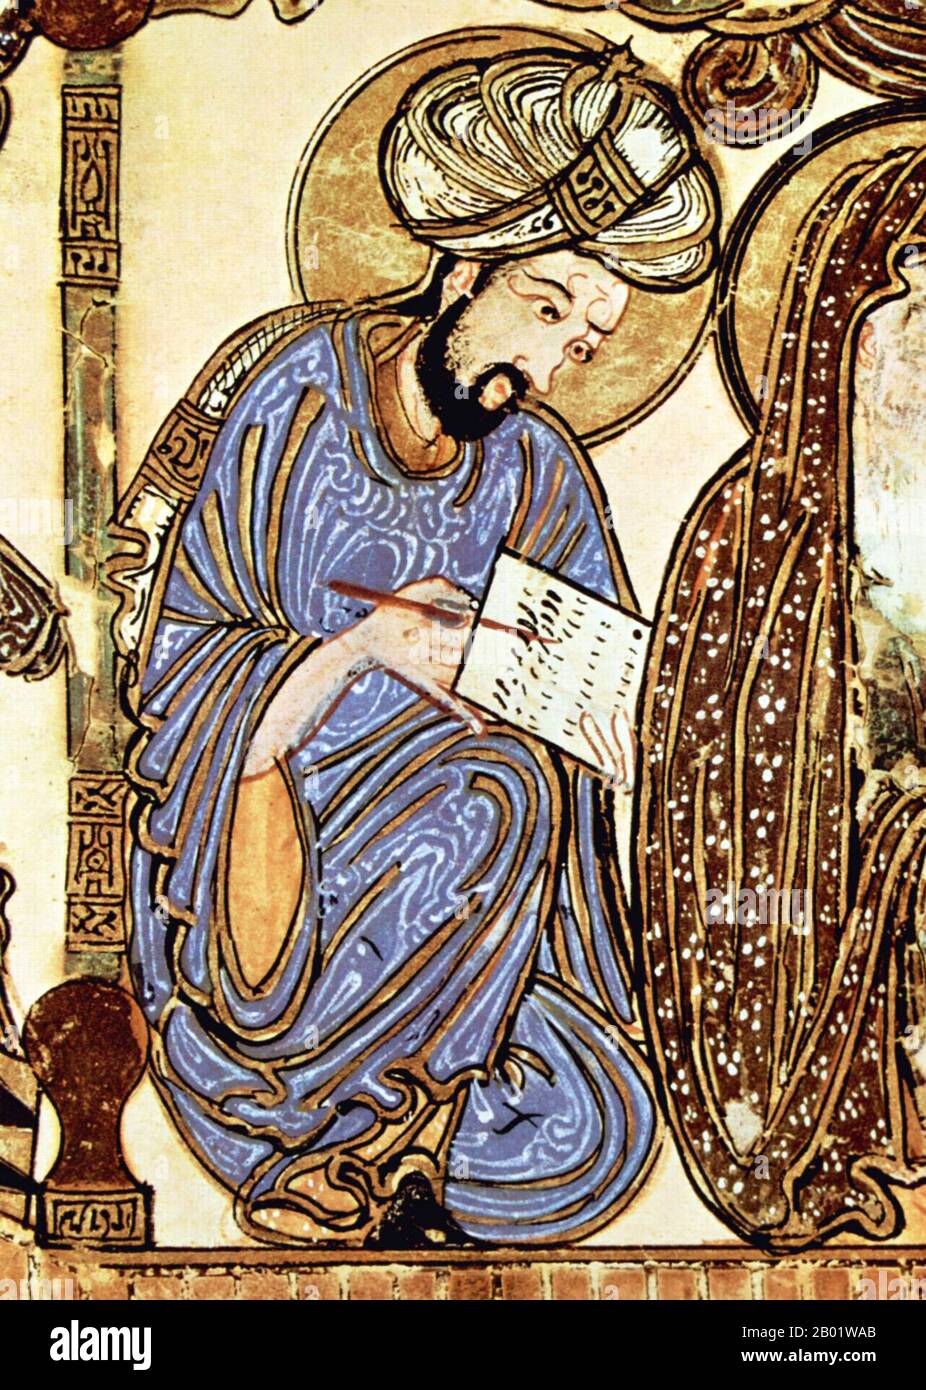 Iraq: Dettaglio di uno scriba. Pittura in miniatura dal 'Maqam' o 'Assemblea' di al-Hariri di Bassora, c. 1225-1235. Le Maqāma (letteralmente "assemblee") sono un genere letterario arabo (originariamente) di prosa rima con intervalli di poesia in cui la stravaganza retorica è evidente. Si dice che l'autore del X secolo Badī al-Zaman al-Hamadhāni abbia inventato la forma, che fu estesa da al-Hariri di Bassora nel secolo successivo. Entrambi gli autori maqāmāt si concentrano su figure ingannevoli le cui peregrinazioni e le cui gesta nel parlare alle assemblee dei potenti sono trasmesse da un narratore. Foto Stock